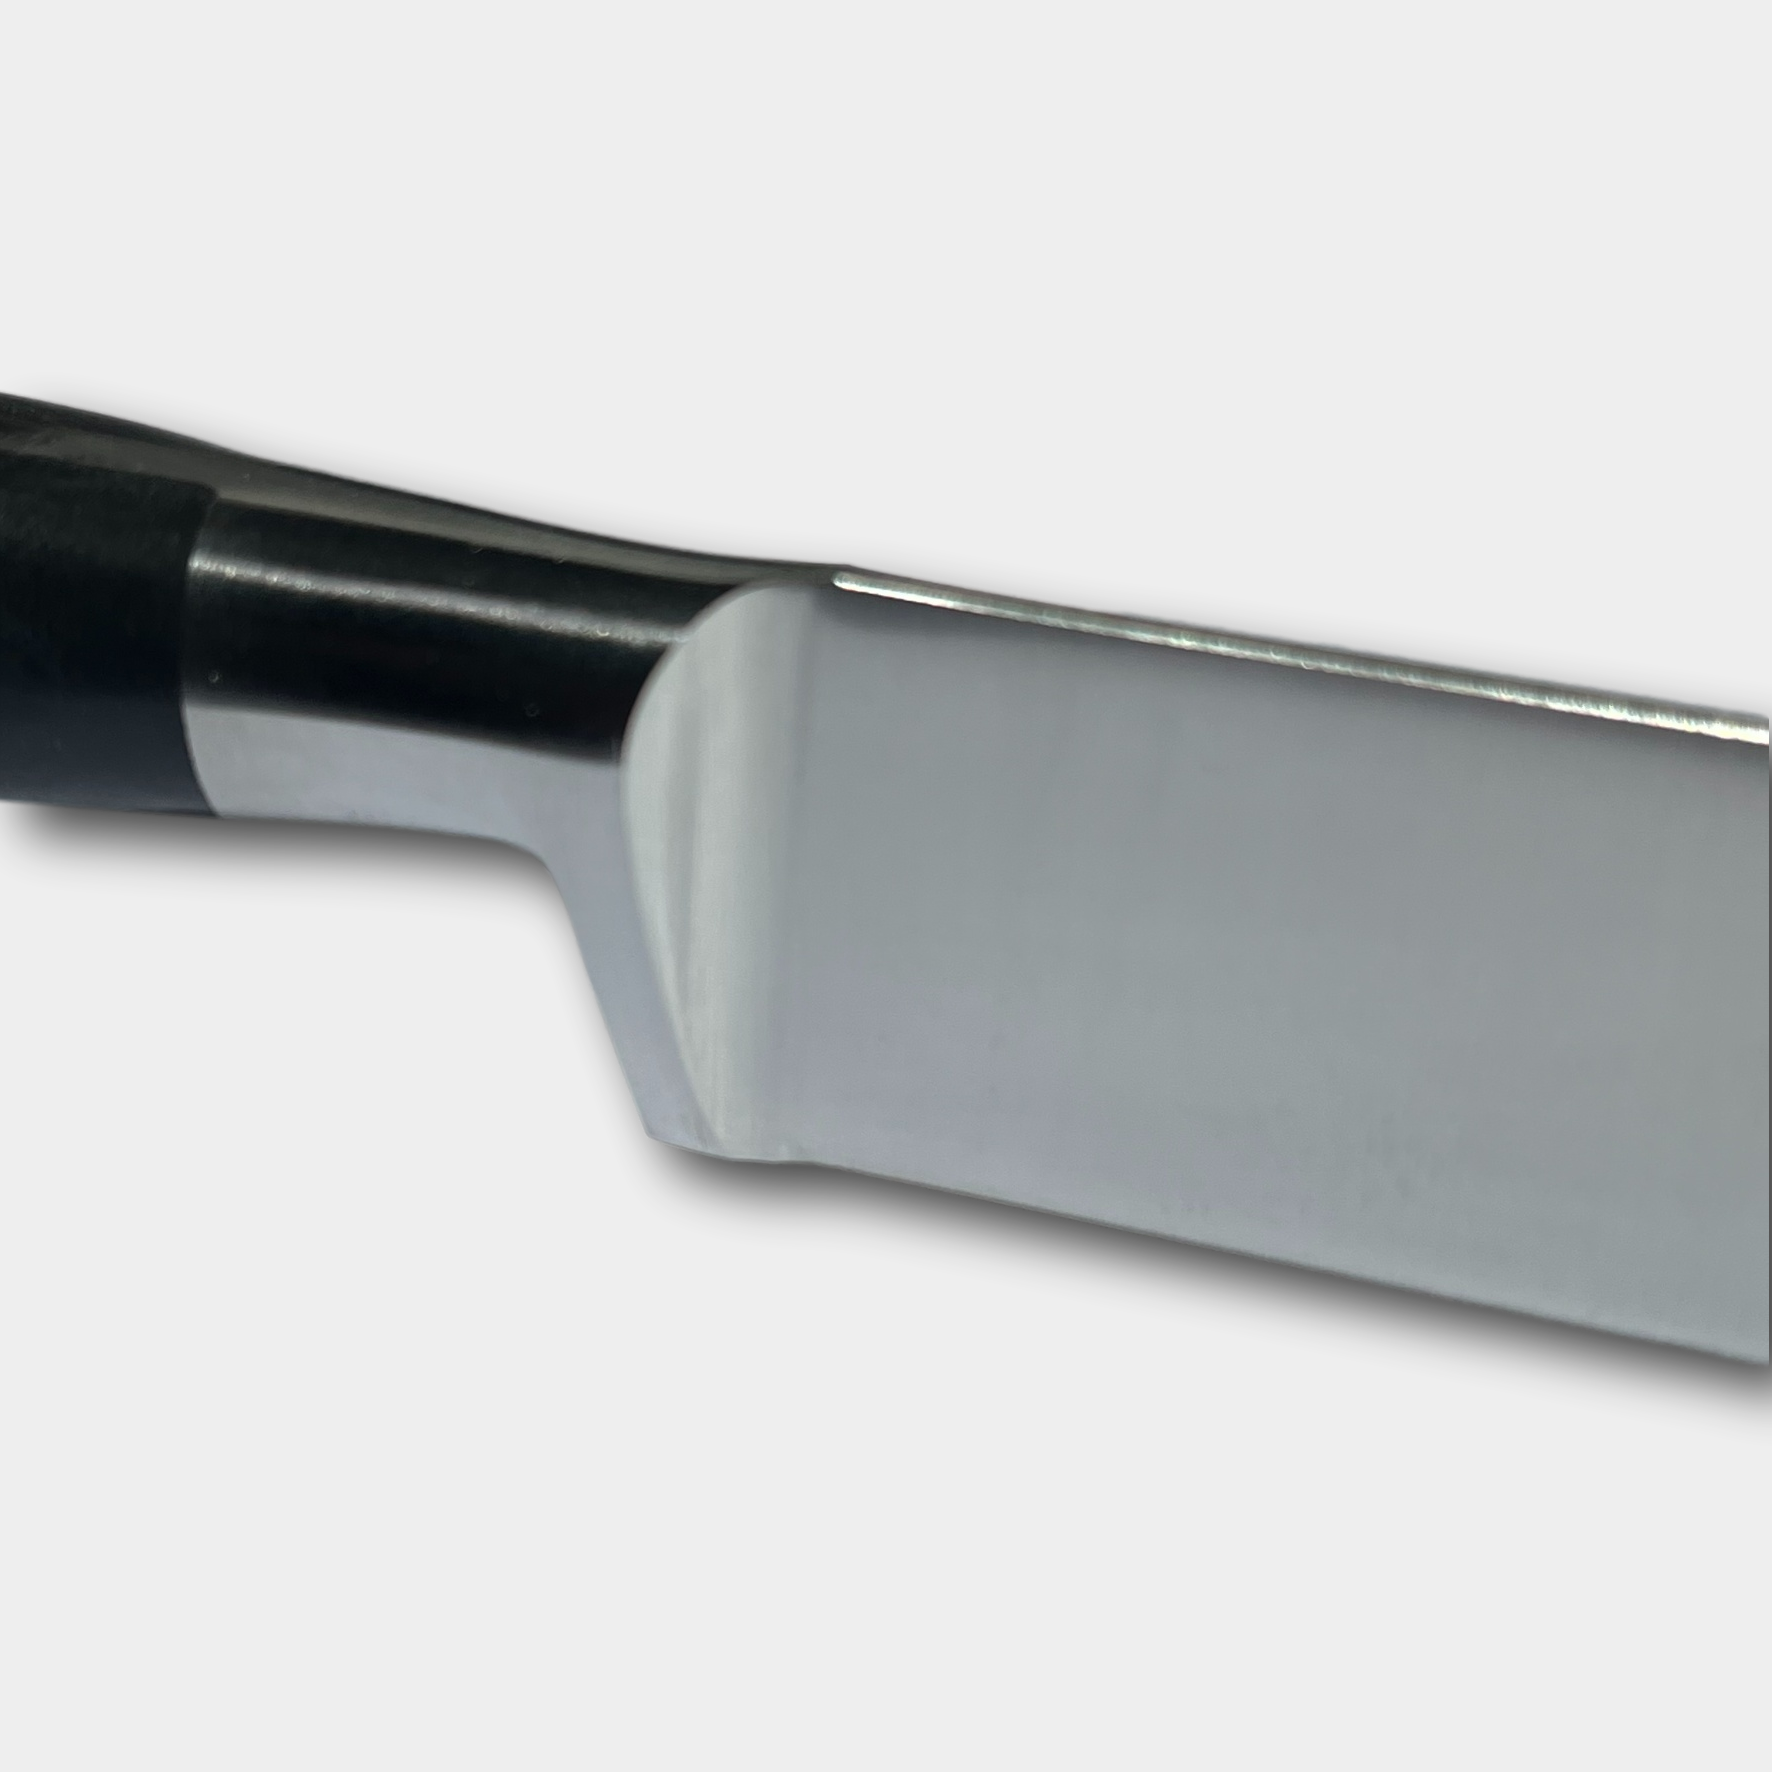 Lion Sabtier Ideal Steel 13cm Boning Knife